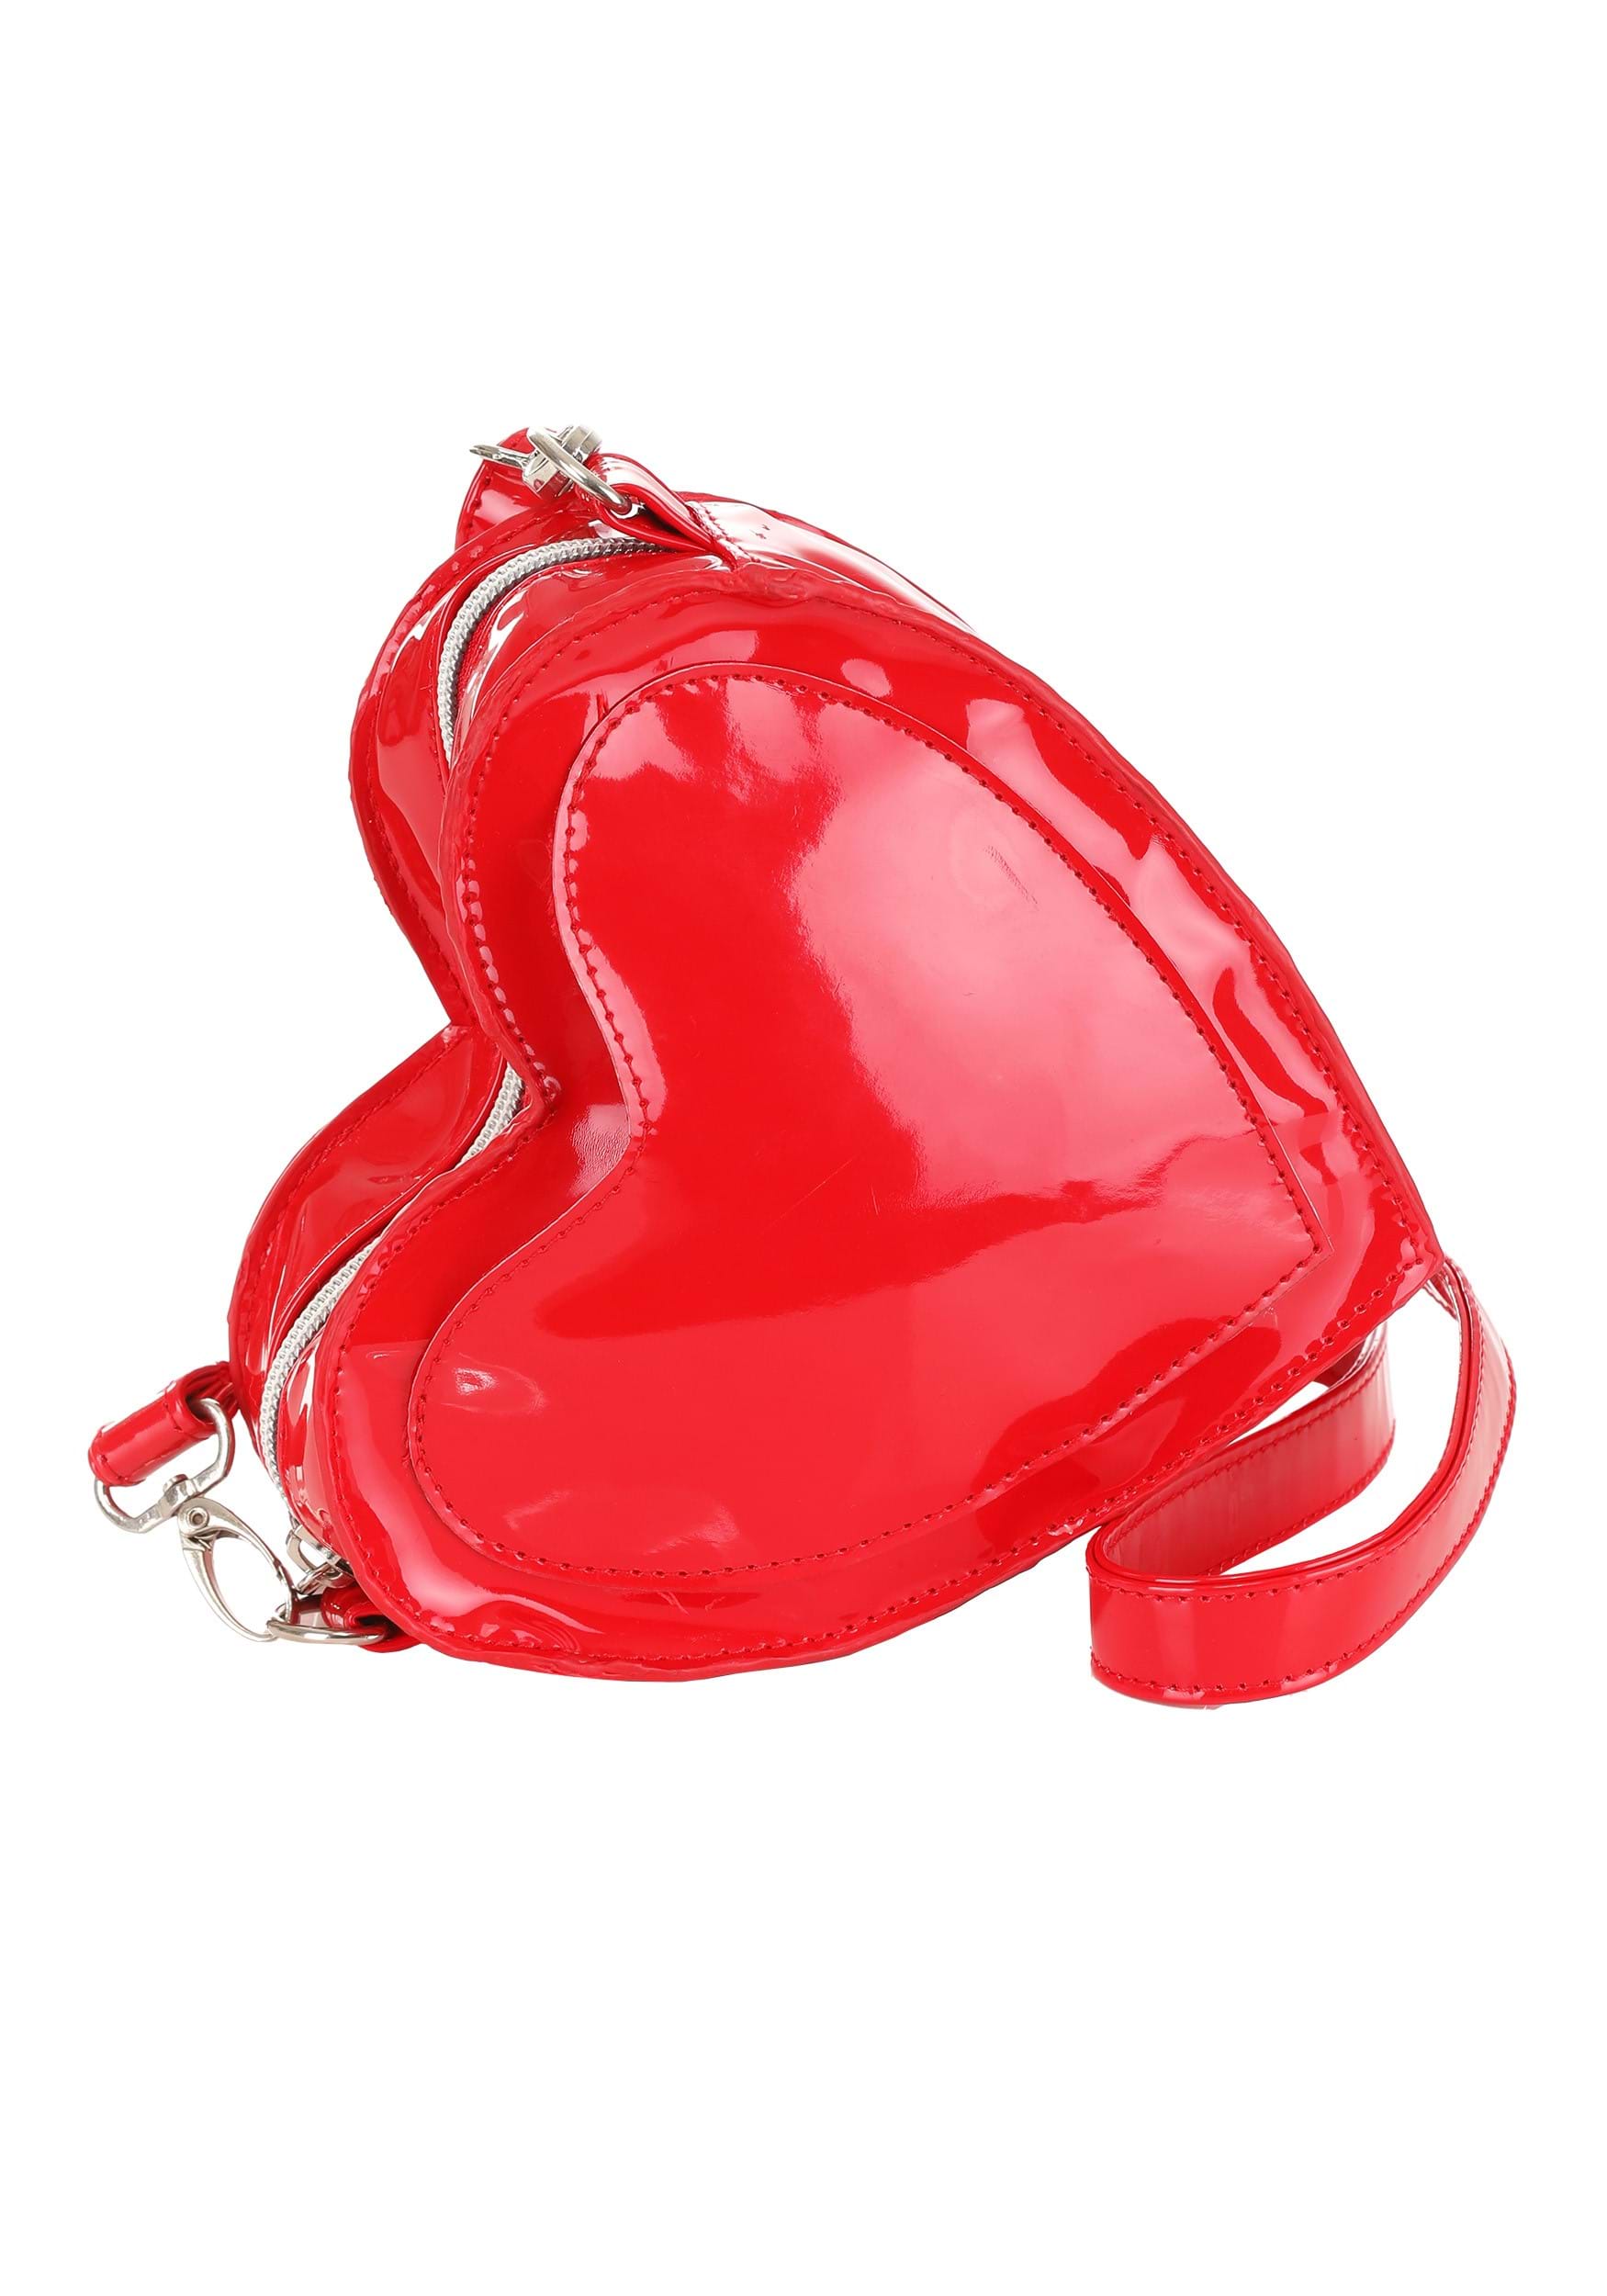 Molded Heart Bag in Retro Red – Simon Miller